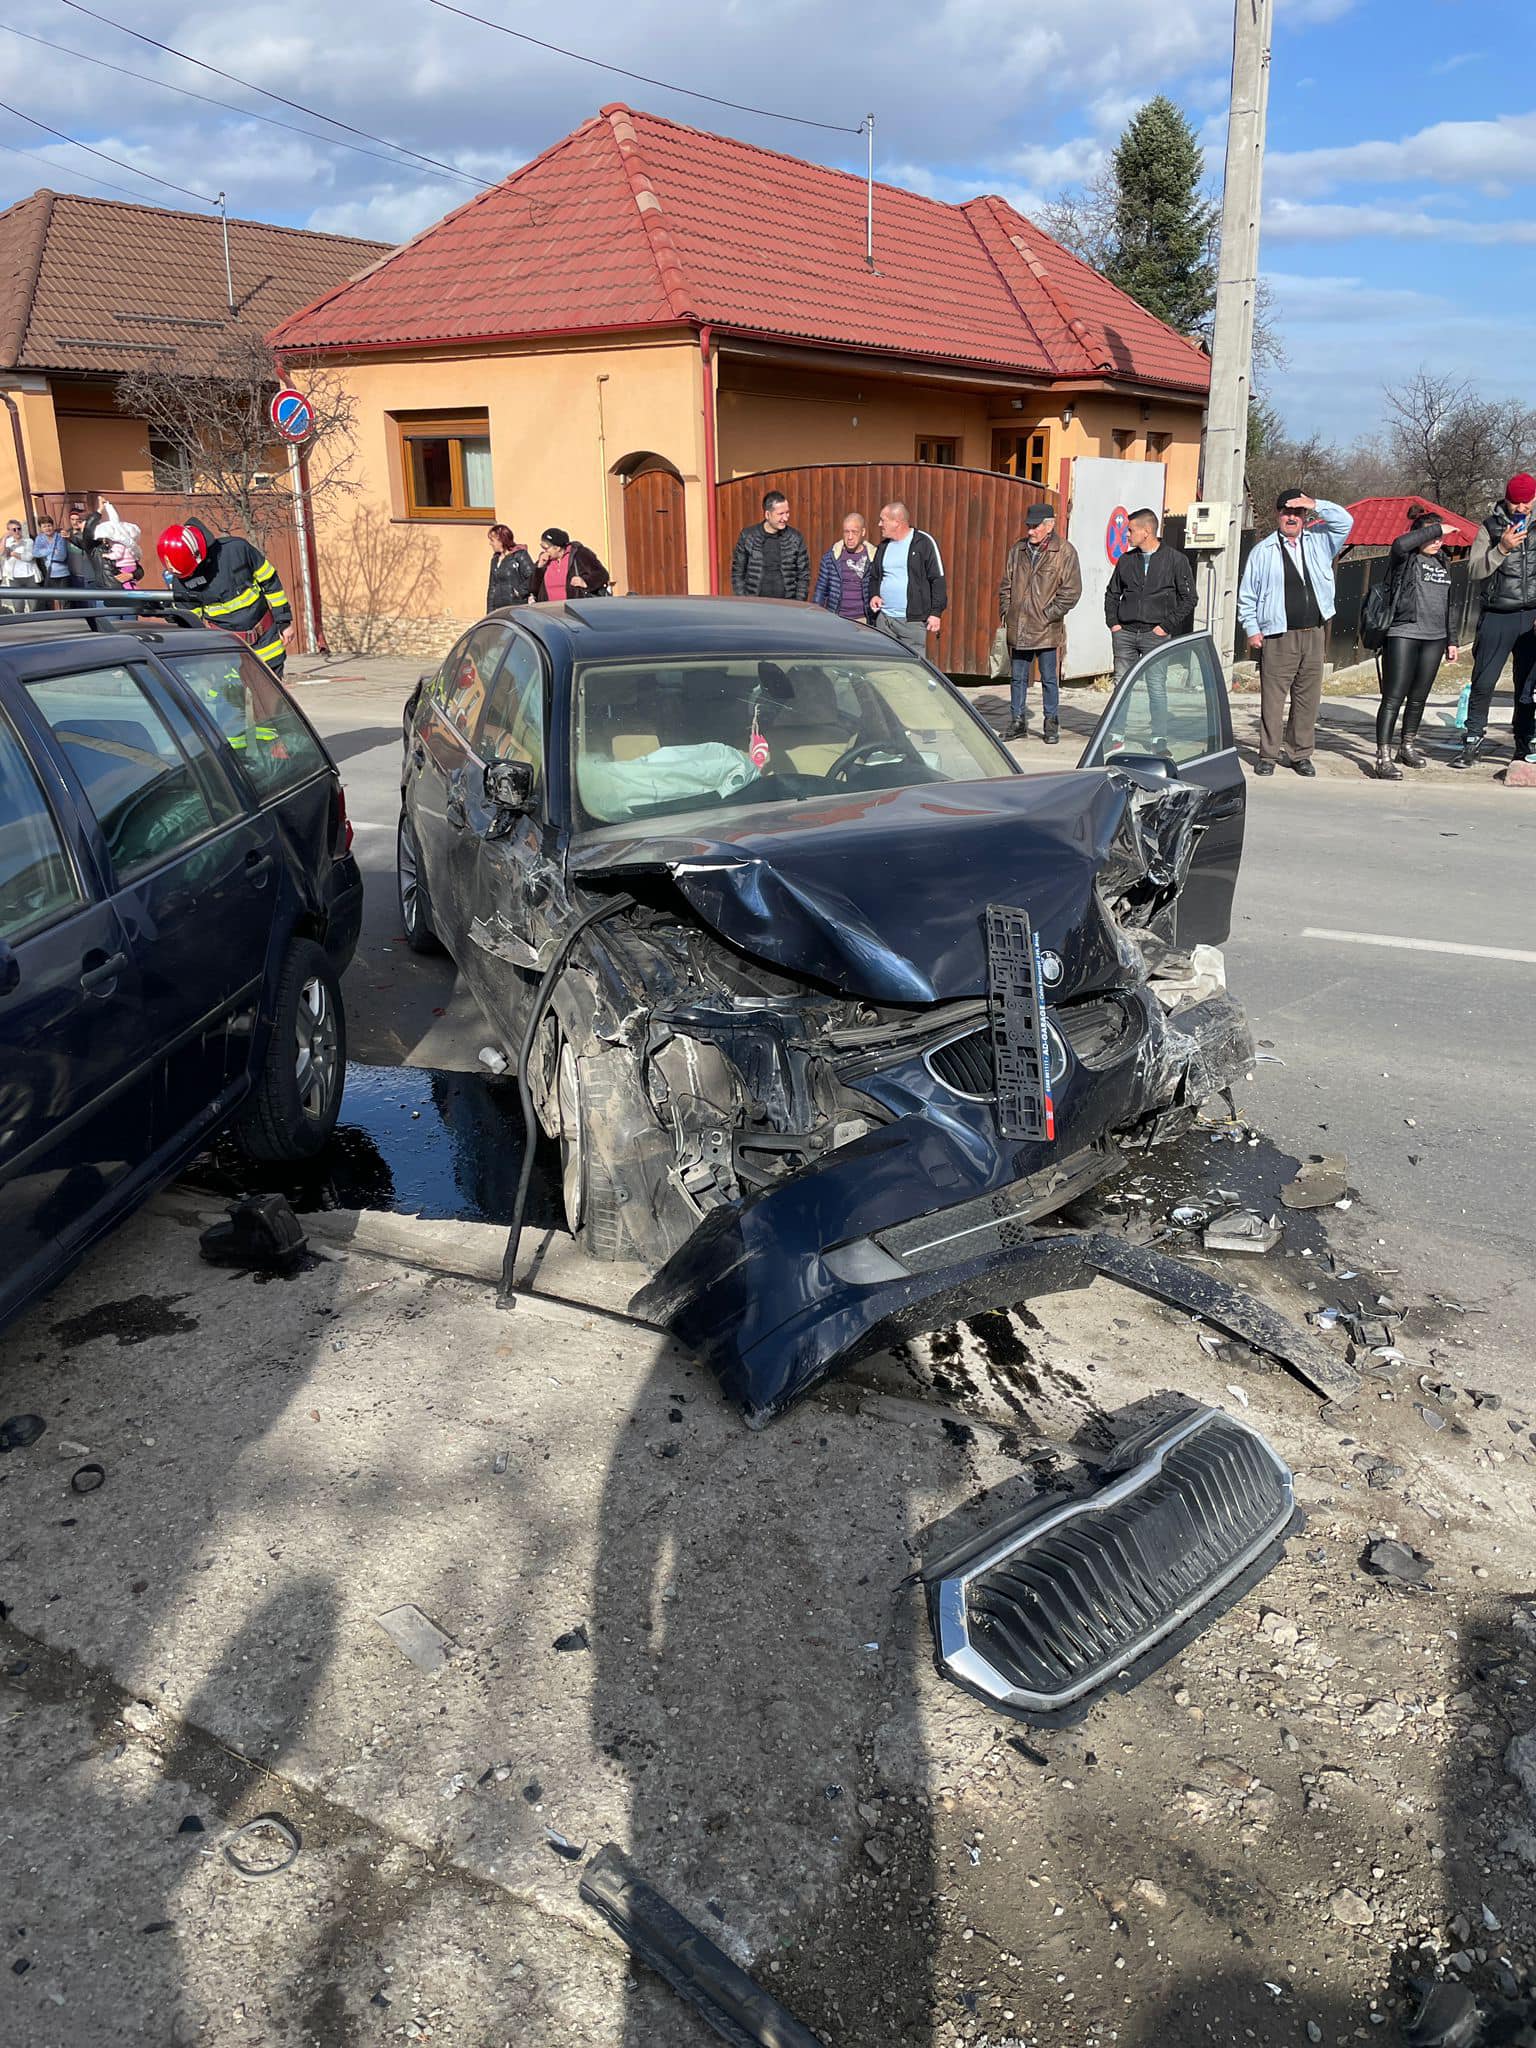 (Foto) Accident Brașov. 5 mașini lovite pe un bulevard din Săcele. „O persoană a fost suferit leziuni corporale și, la acest moment, beneficiază de sprijin medical” 4